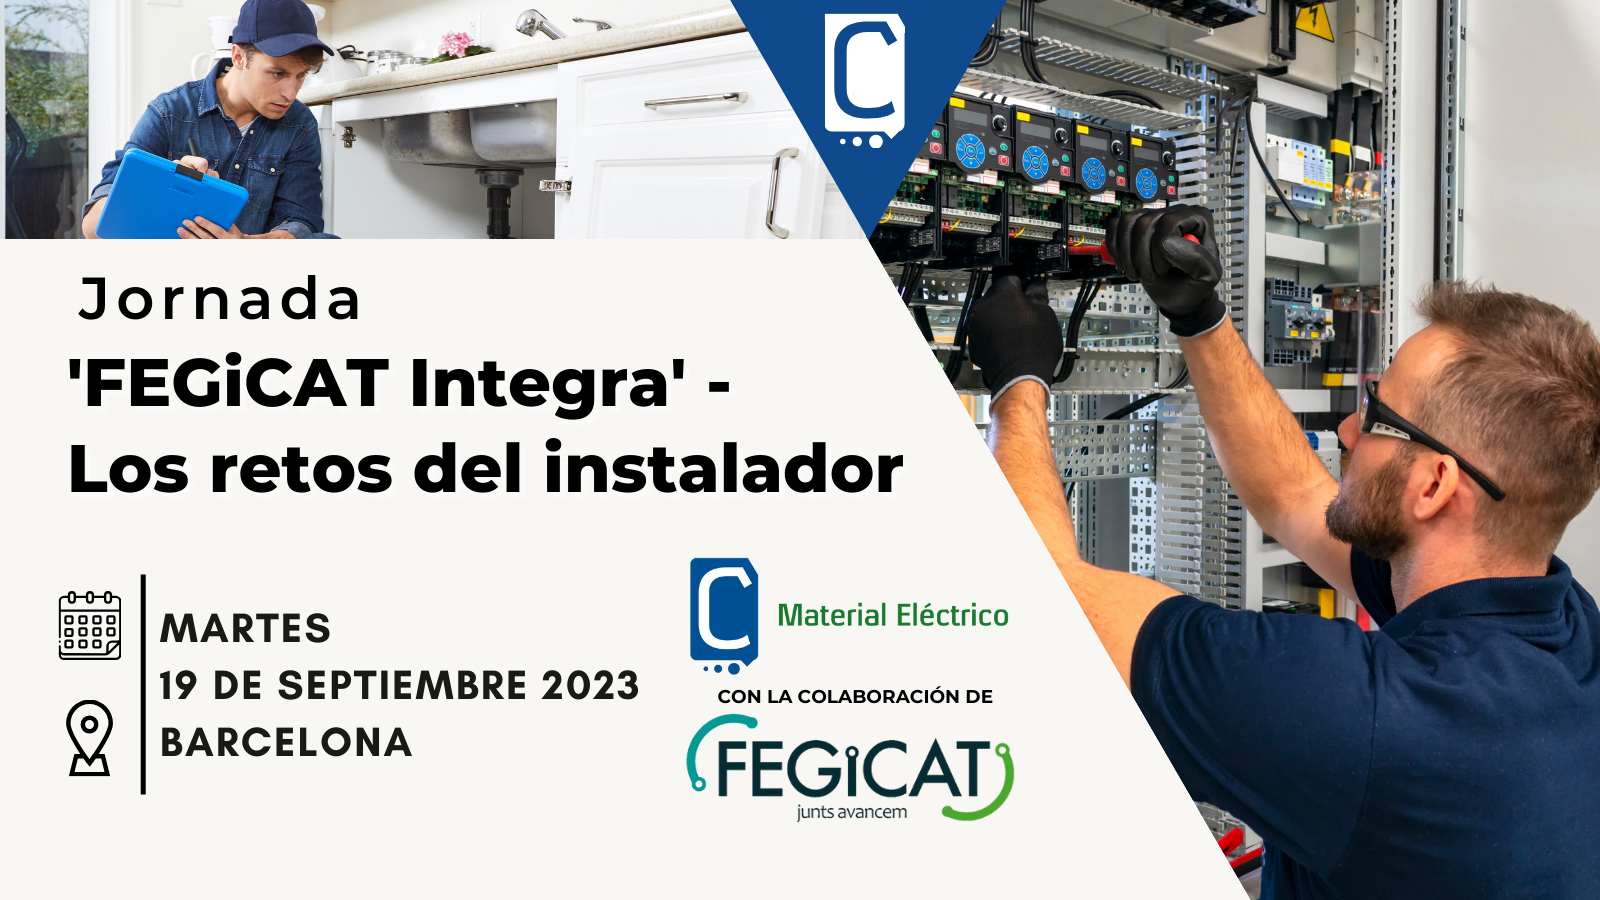 Jornada FEGiCAT Integra en Barcelona, septiembre 2023